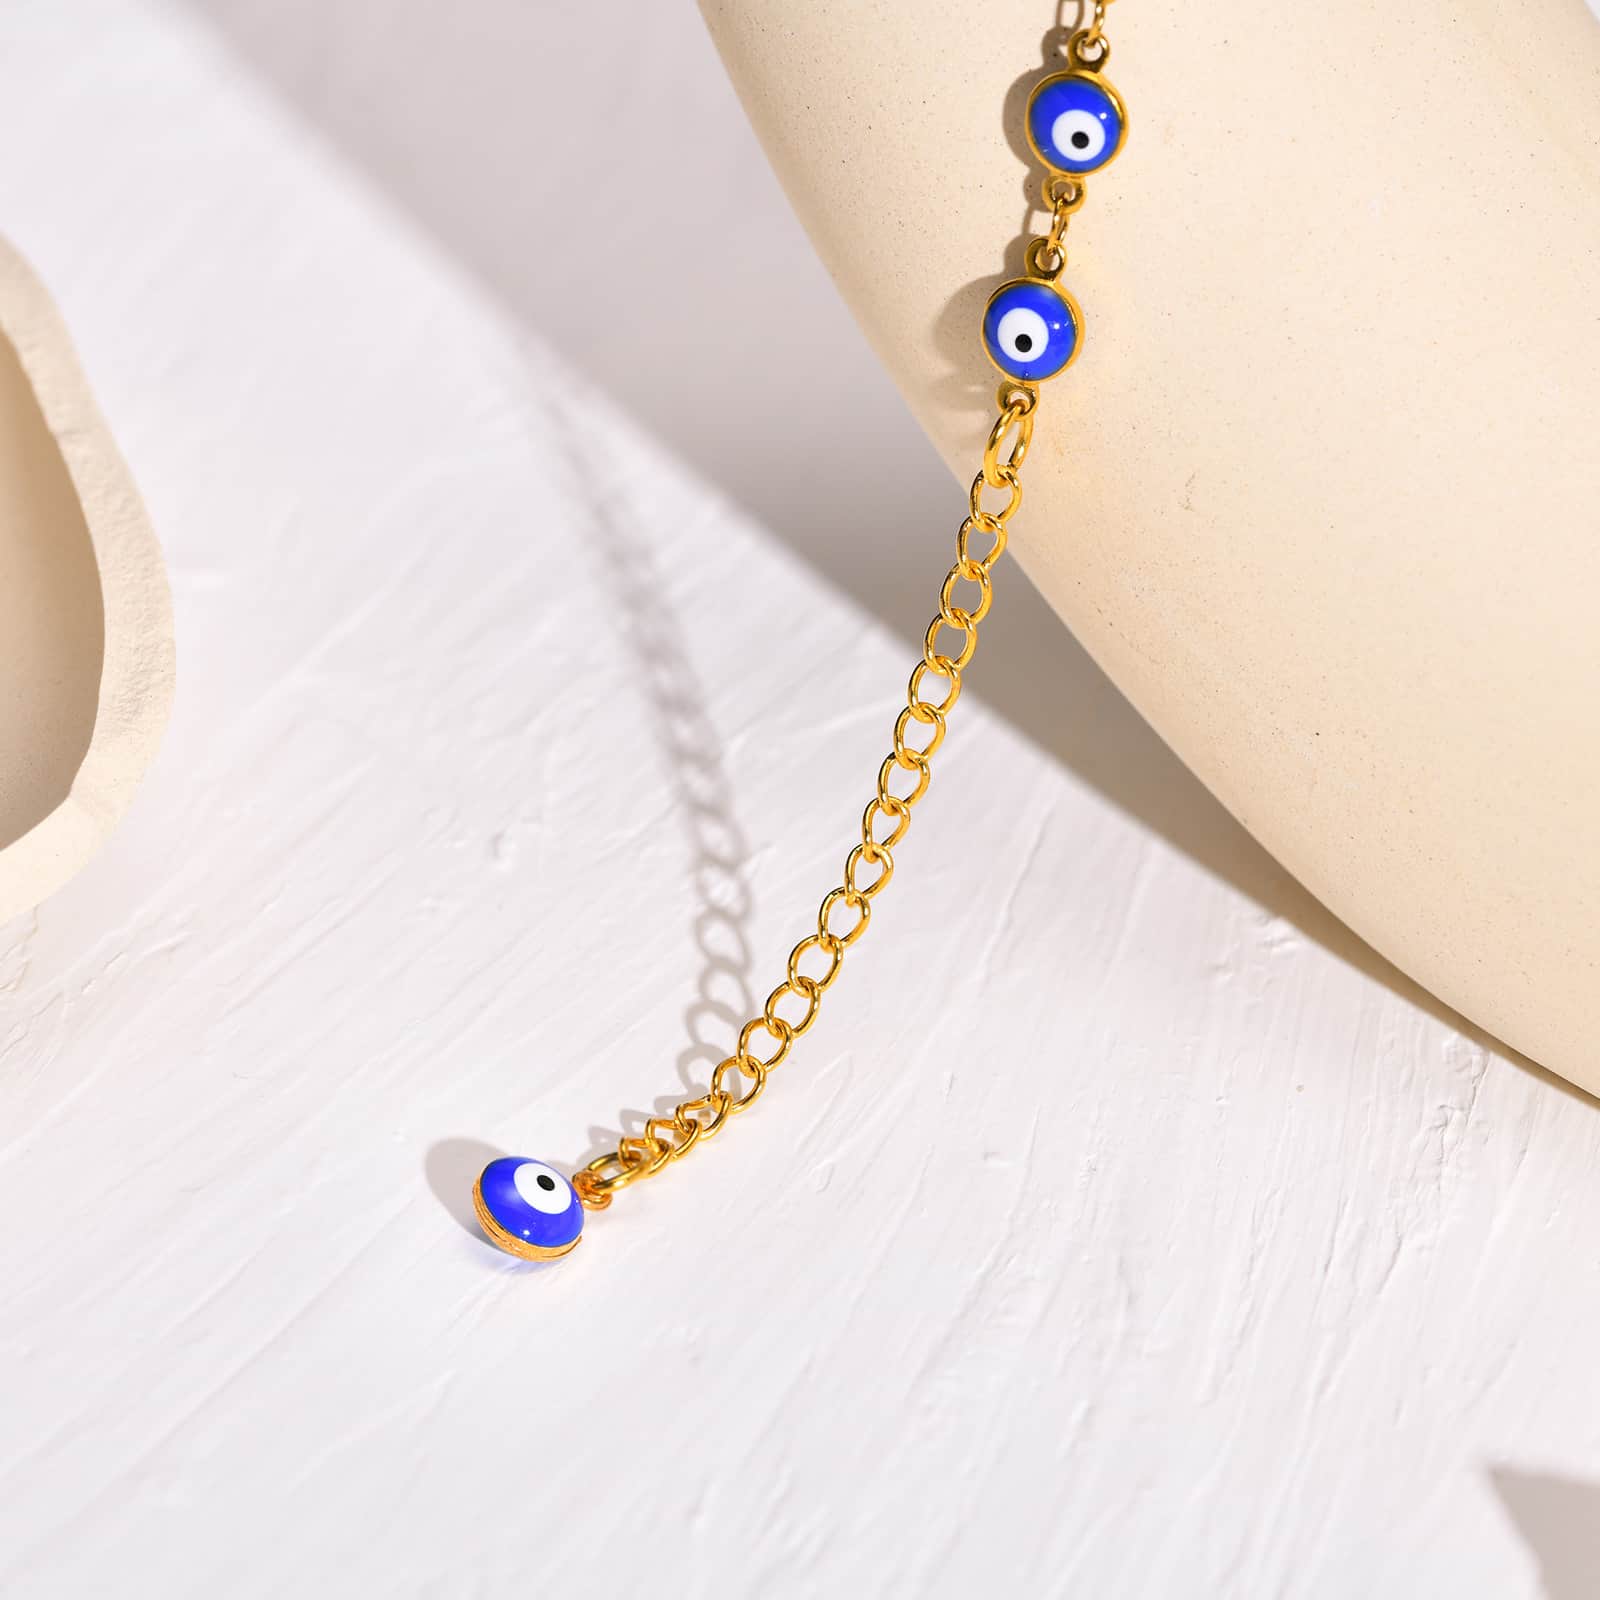 Vue en gros plan du Bracelet de cheville en perles de nazar boncuk bleu avec amulette khamsa posé sur une assiette beige Kaosix